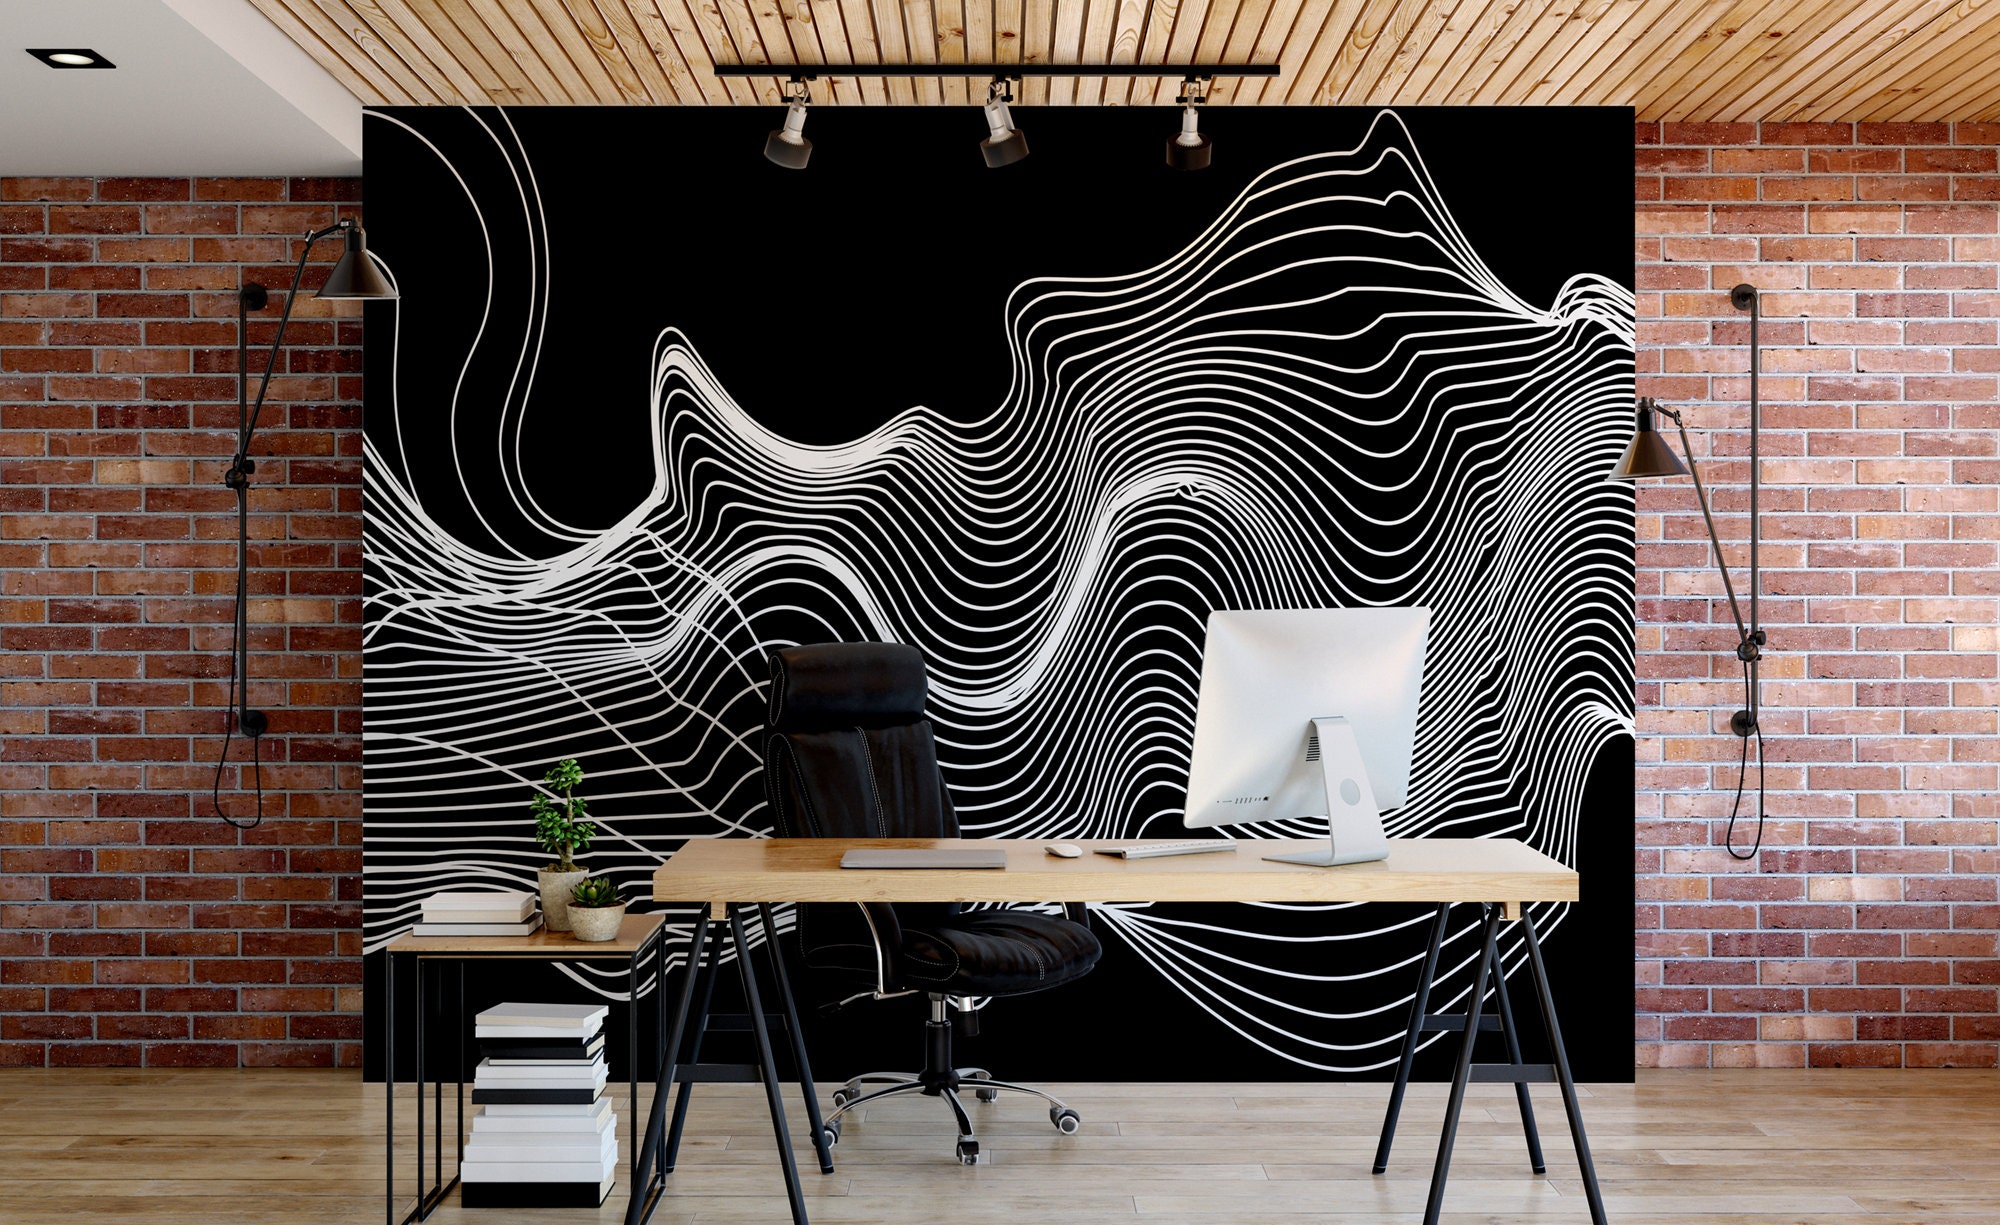 Off-White wallpaper - Dark Version by 4ureli1 on DeviantArt